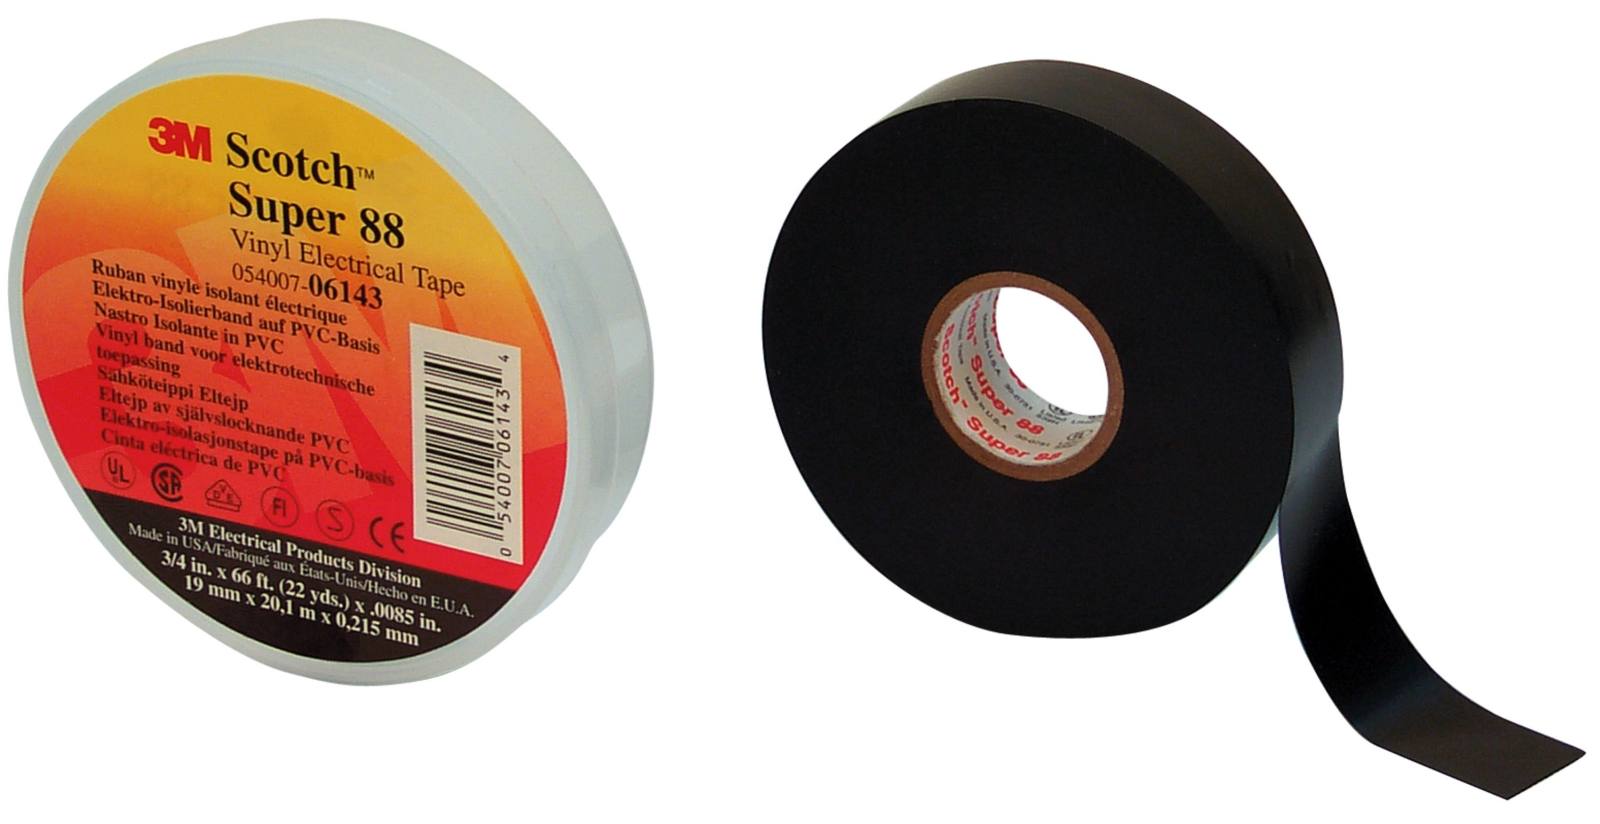 3M Scotch Super 88 Vinyl Elektro-Isolierband, Schwarz 19 mm x 20 m, 0,22 mm, in einer Box